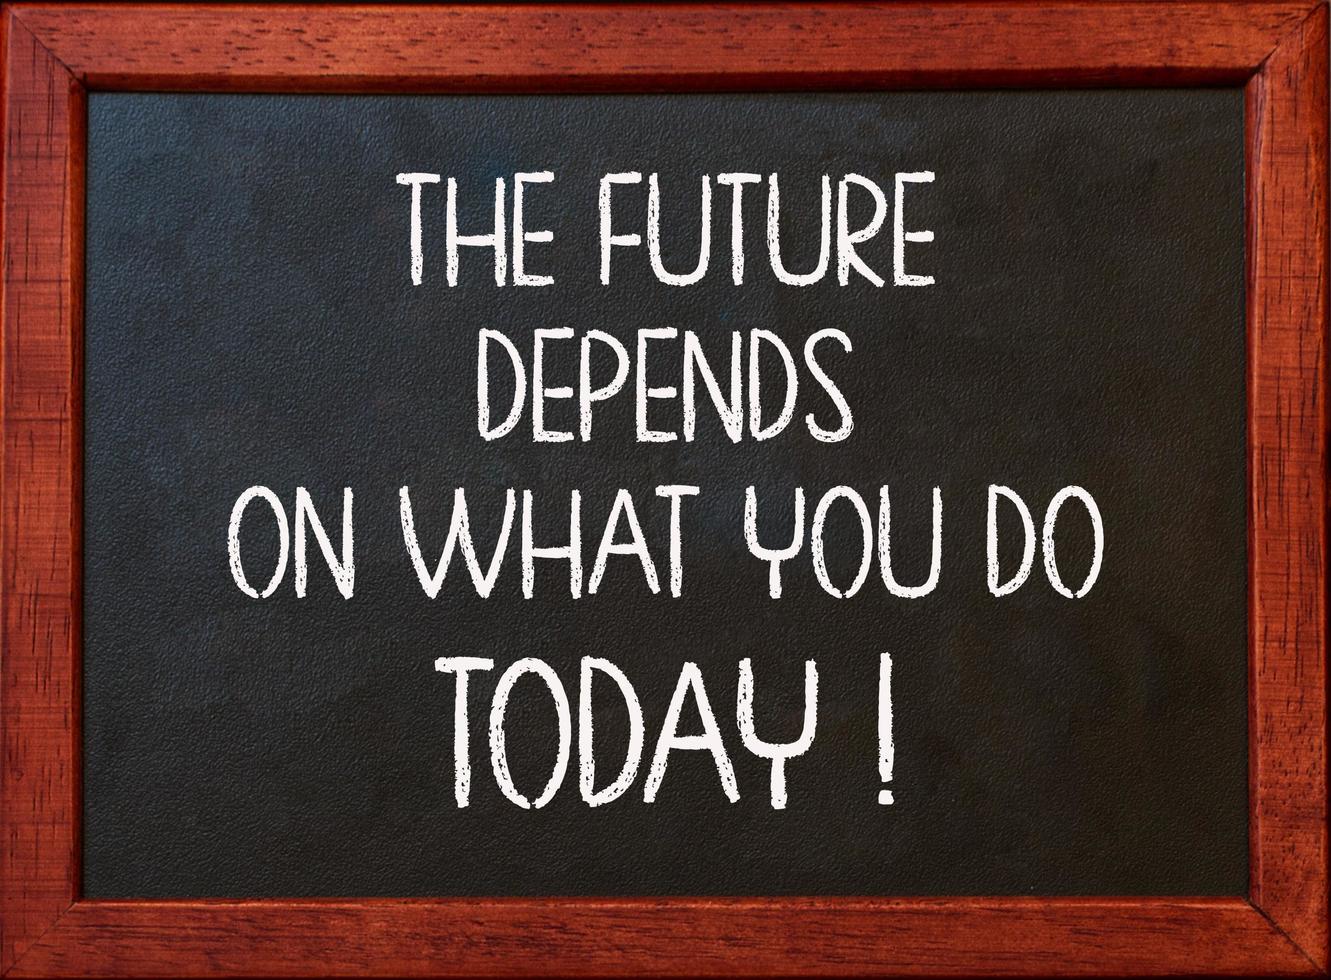 Die Zukunft hängt davon ab, was Sie heute tun. Motivationszitat auf Tafel foto